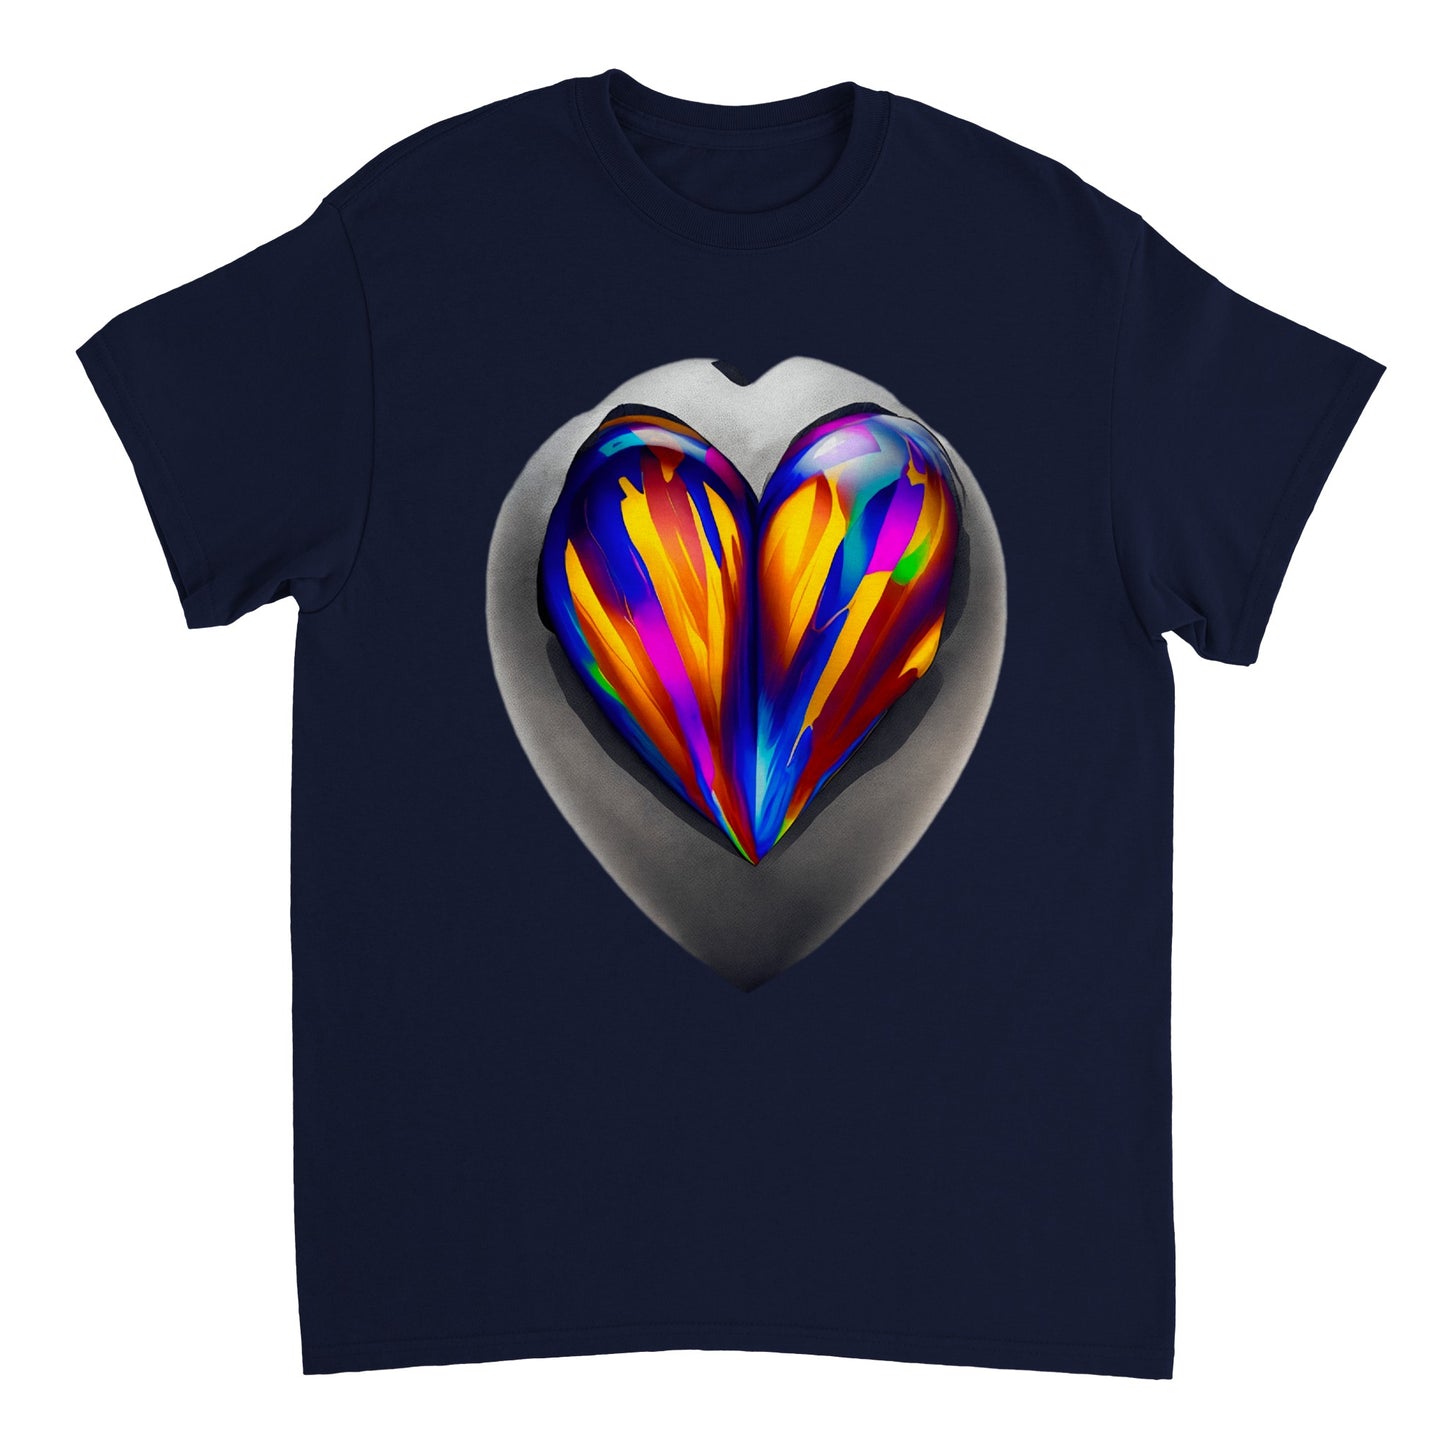 Love Heart - Heavyweight Unisex Crewneck T-shirt 60